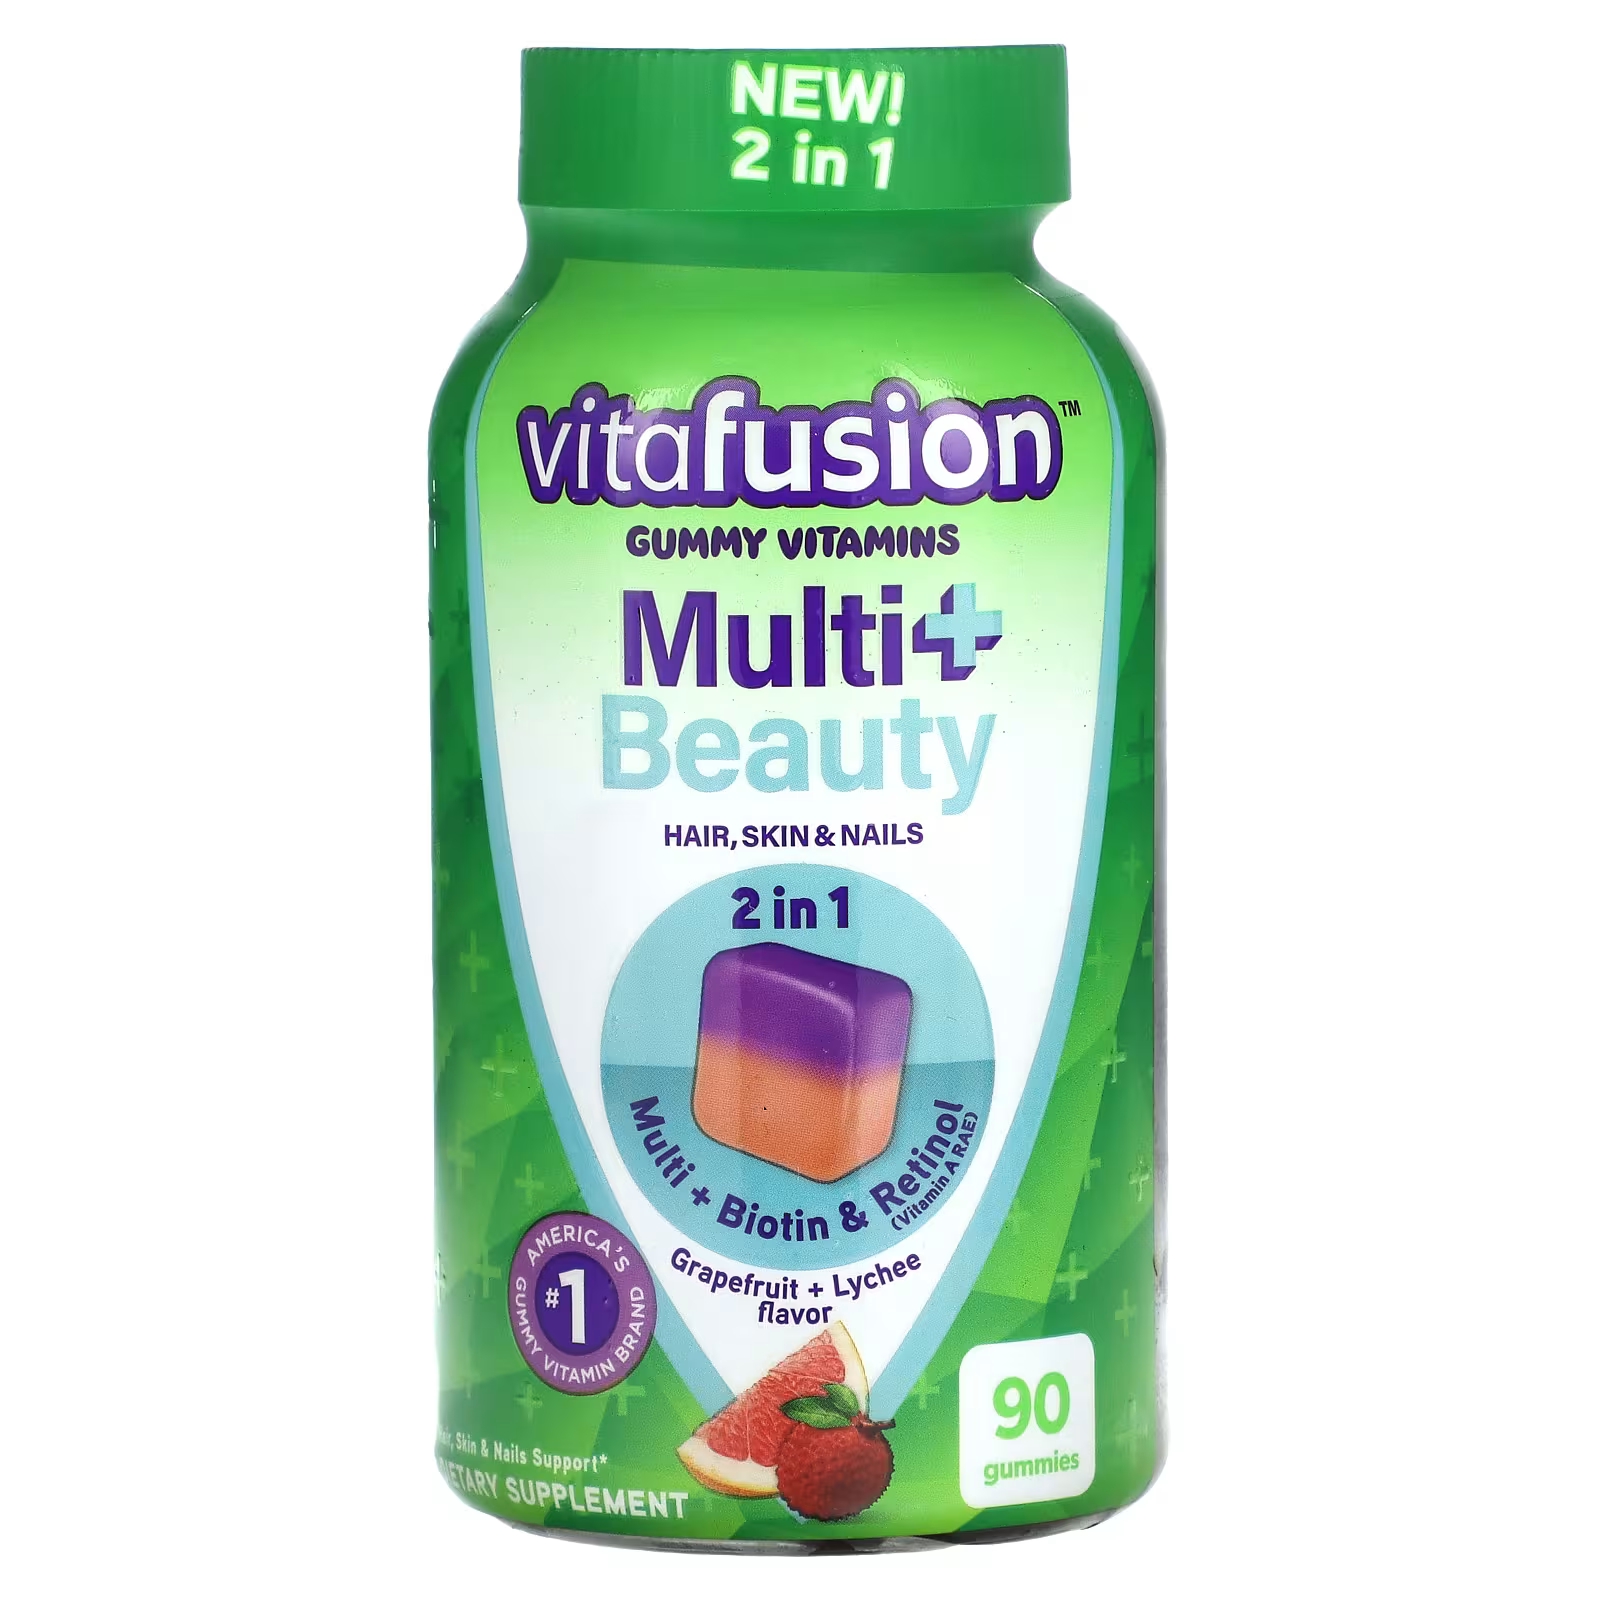 Пищевая добавка VitaFusion Multi+ Beauty грейпфрут и личи, 90 жевательных конфет